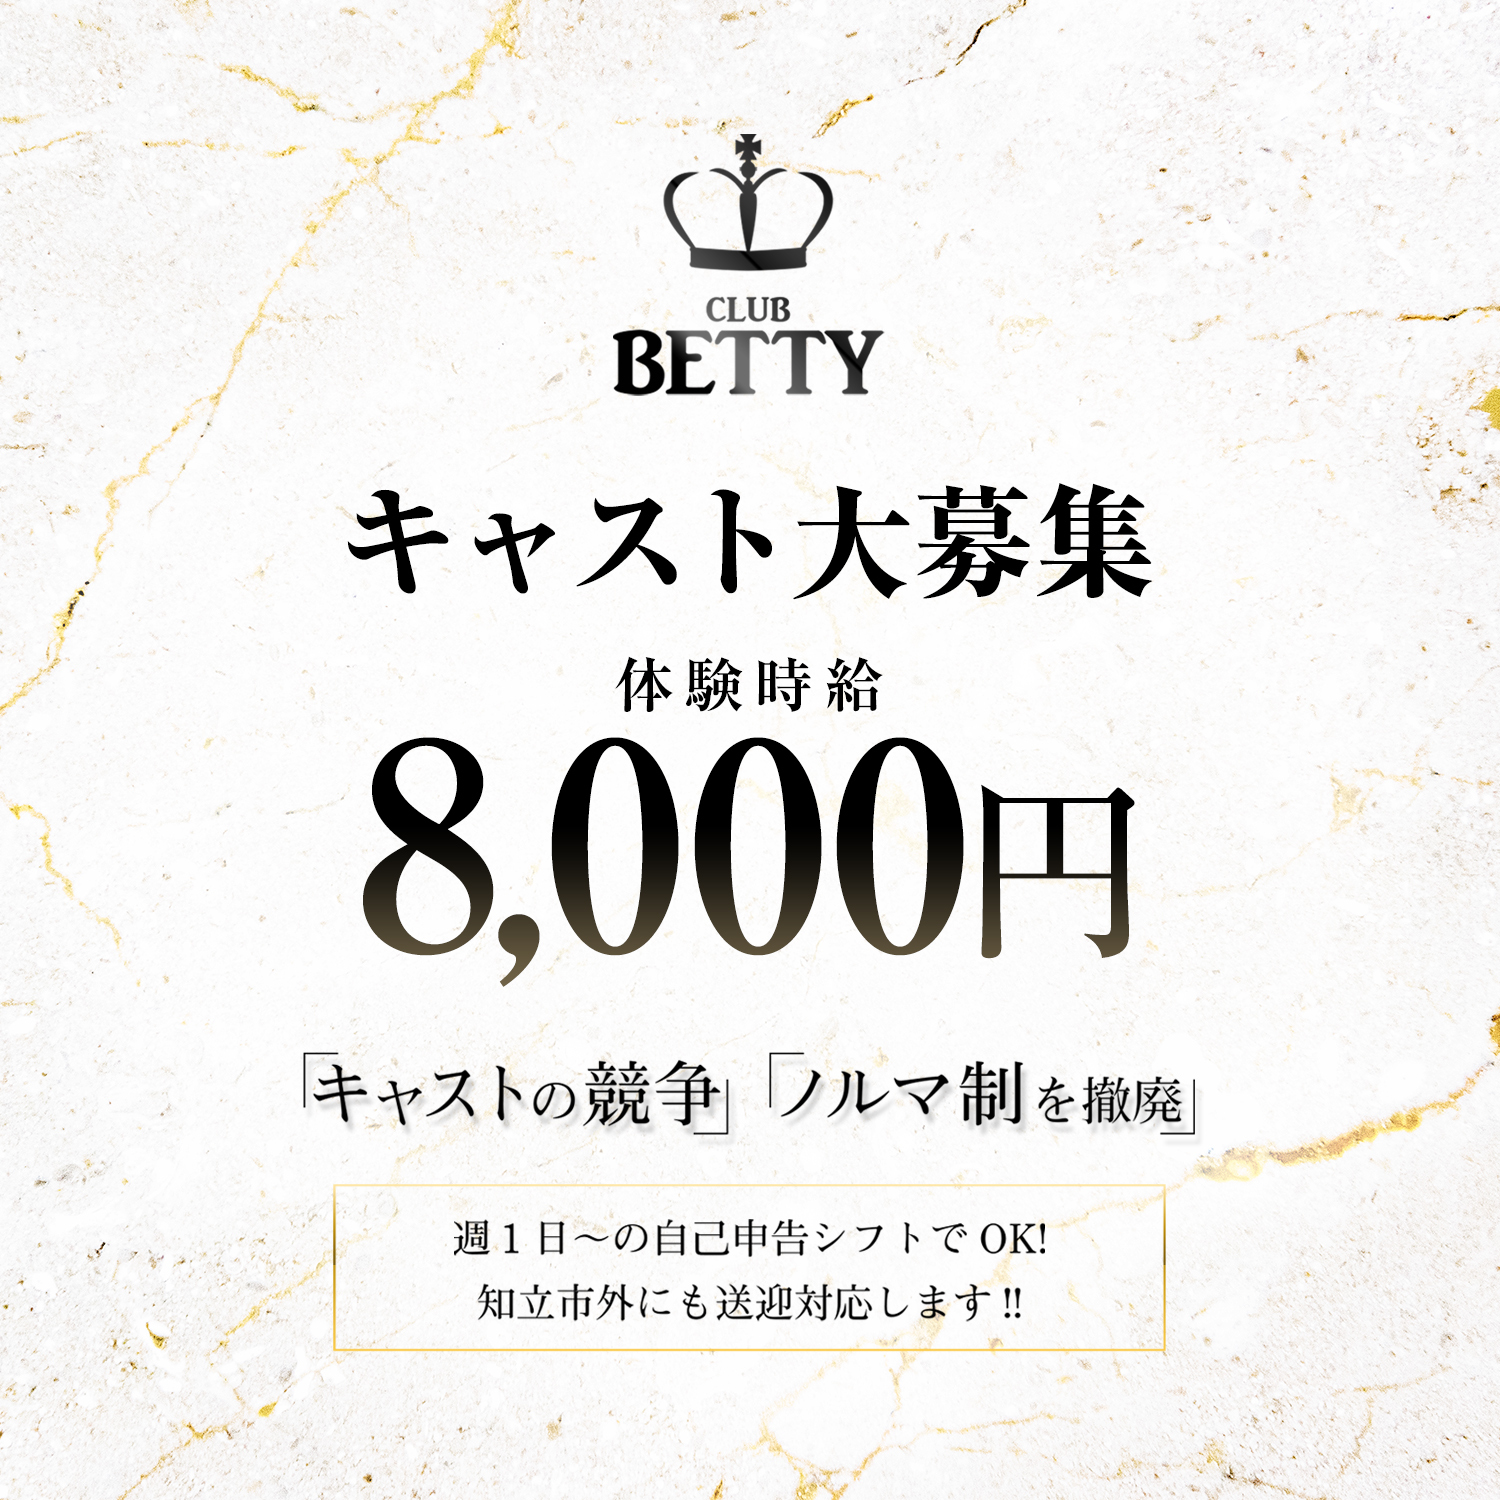 知立キャバクラ「CLUB BETTY」ショップニュース